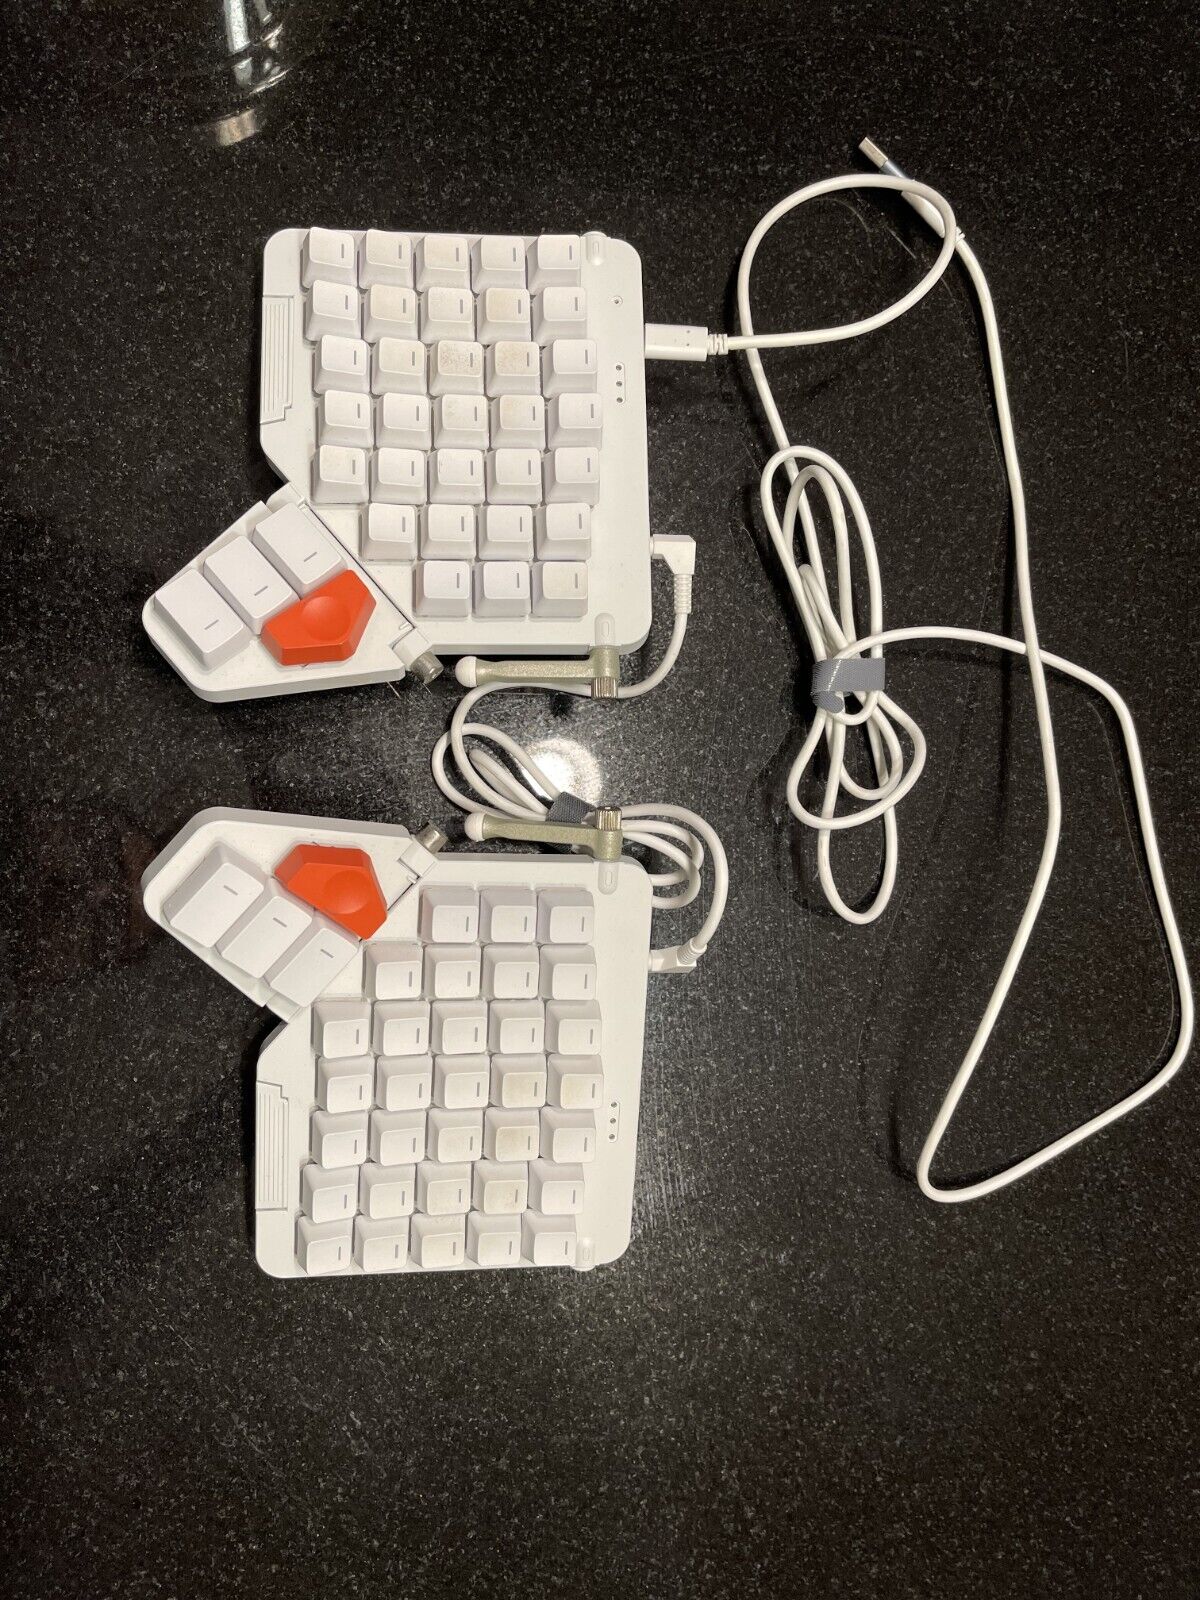 ZSA Moonlader keyboard, blank keys, glorious panda switches, manfretto tripods